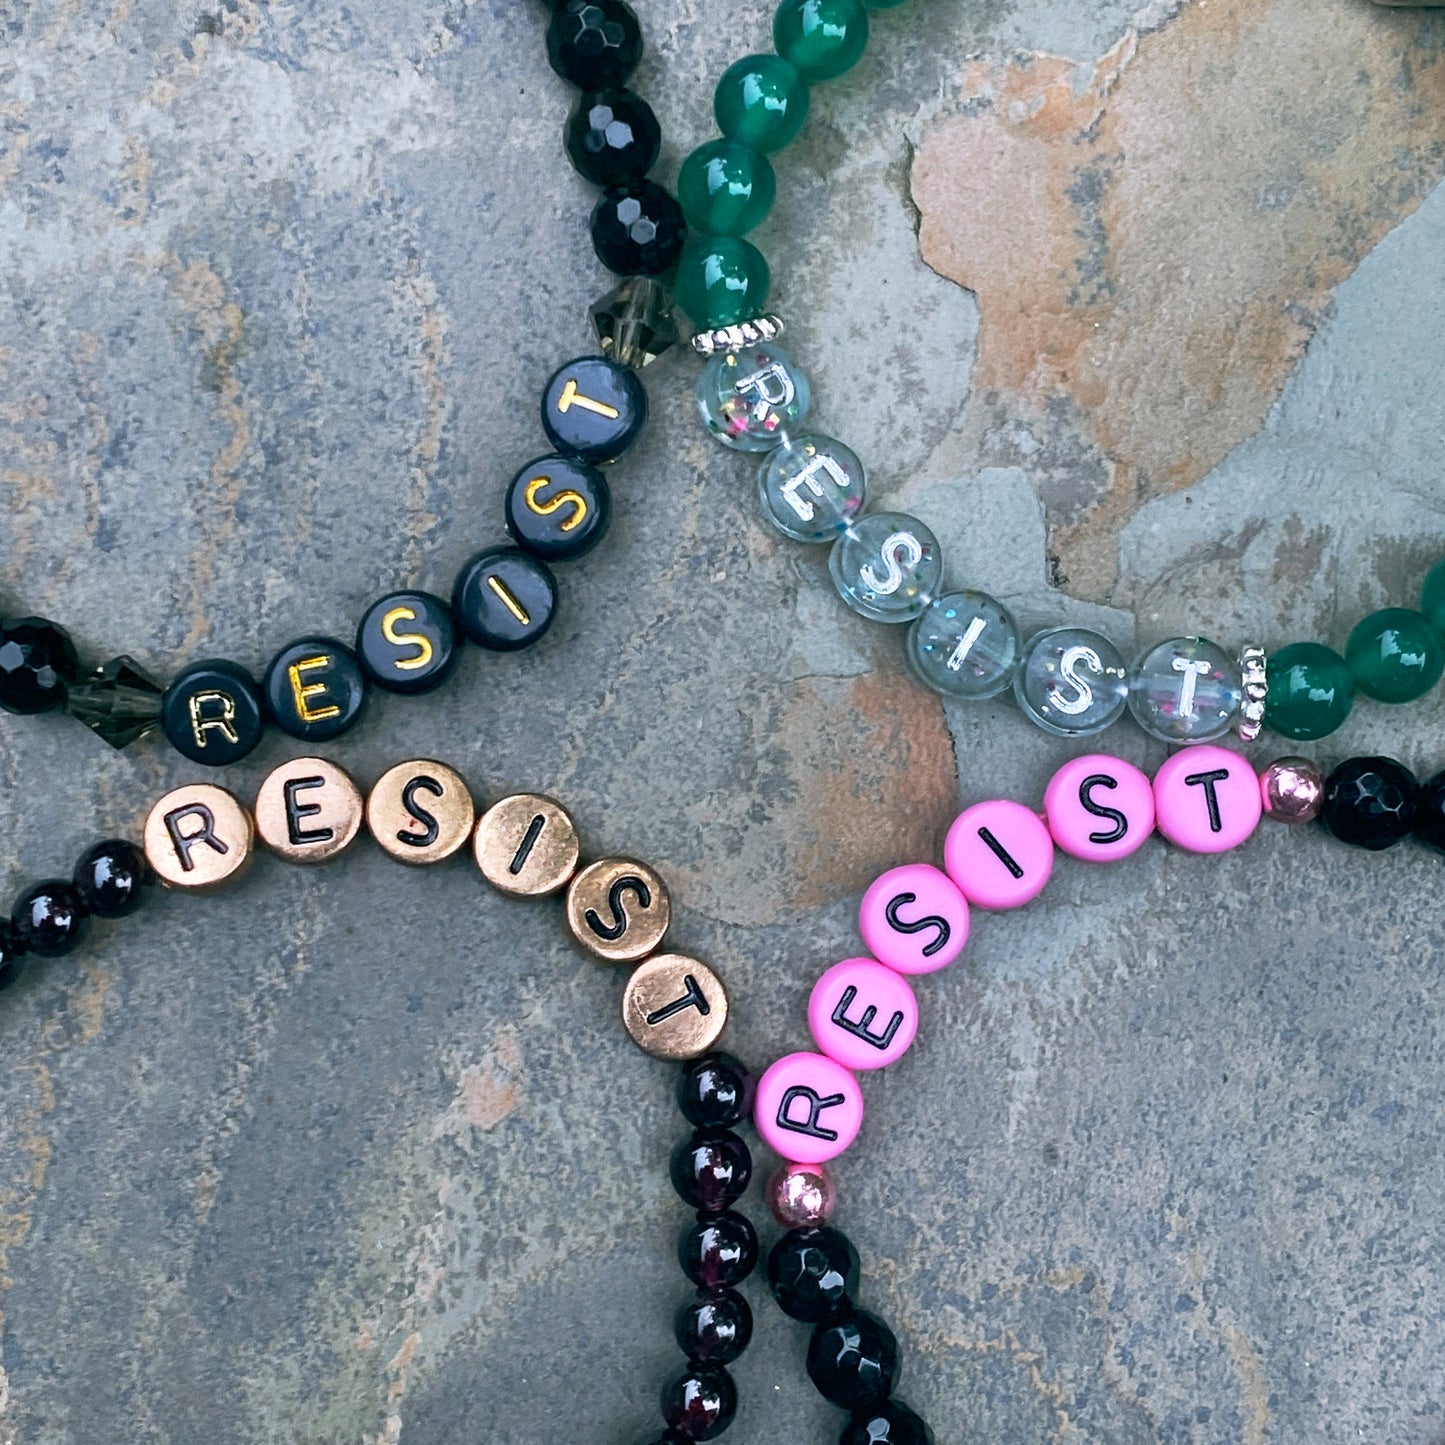 New Women’s “Resist” Gemstone Stretch Bracelets